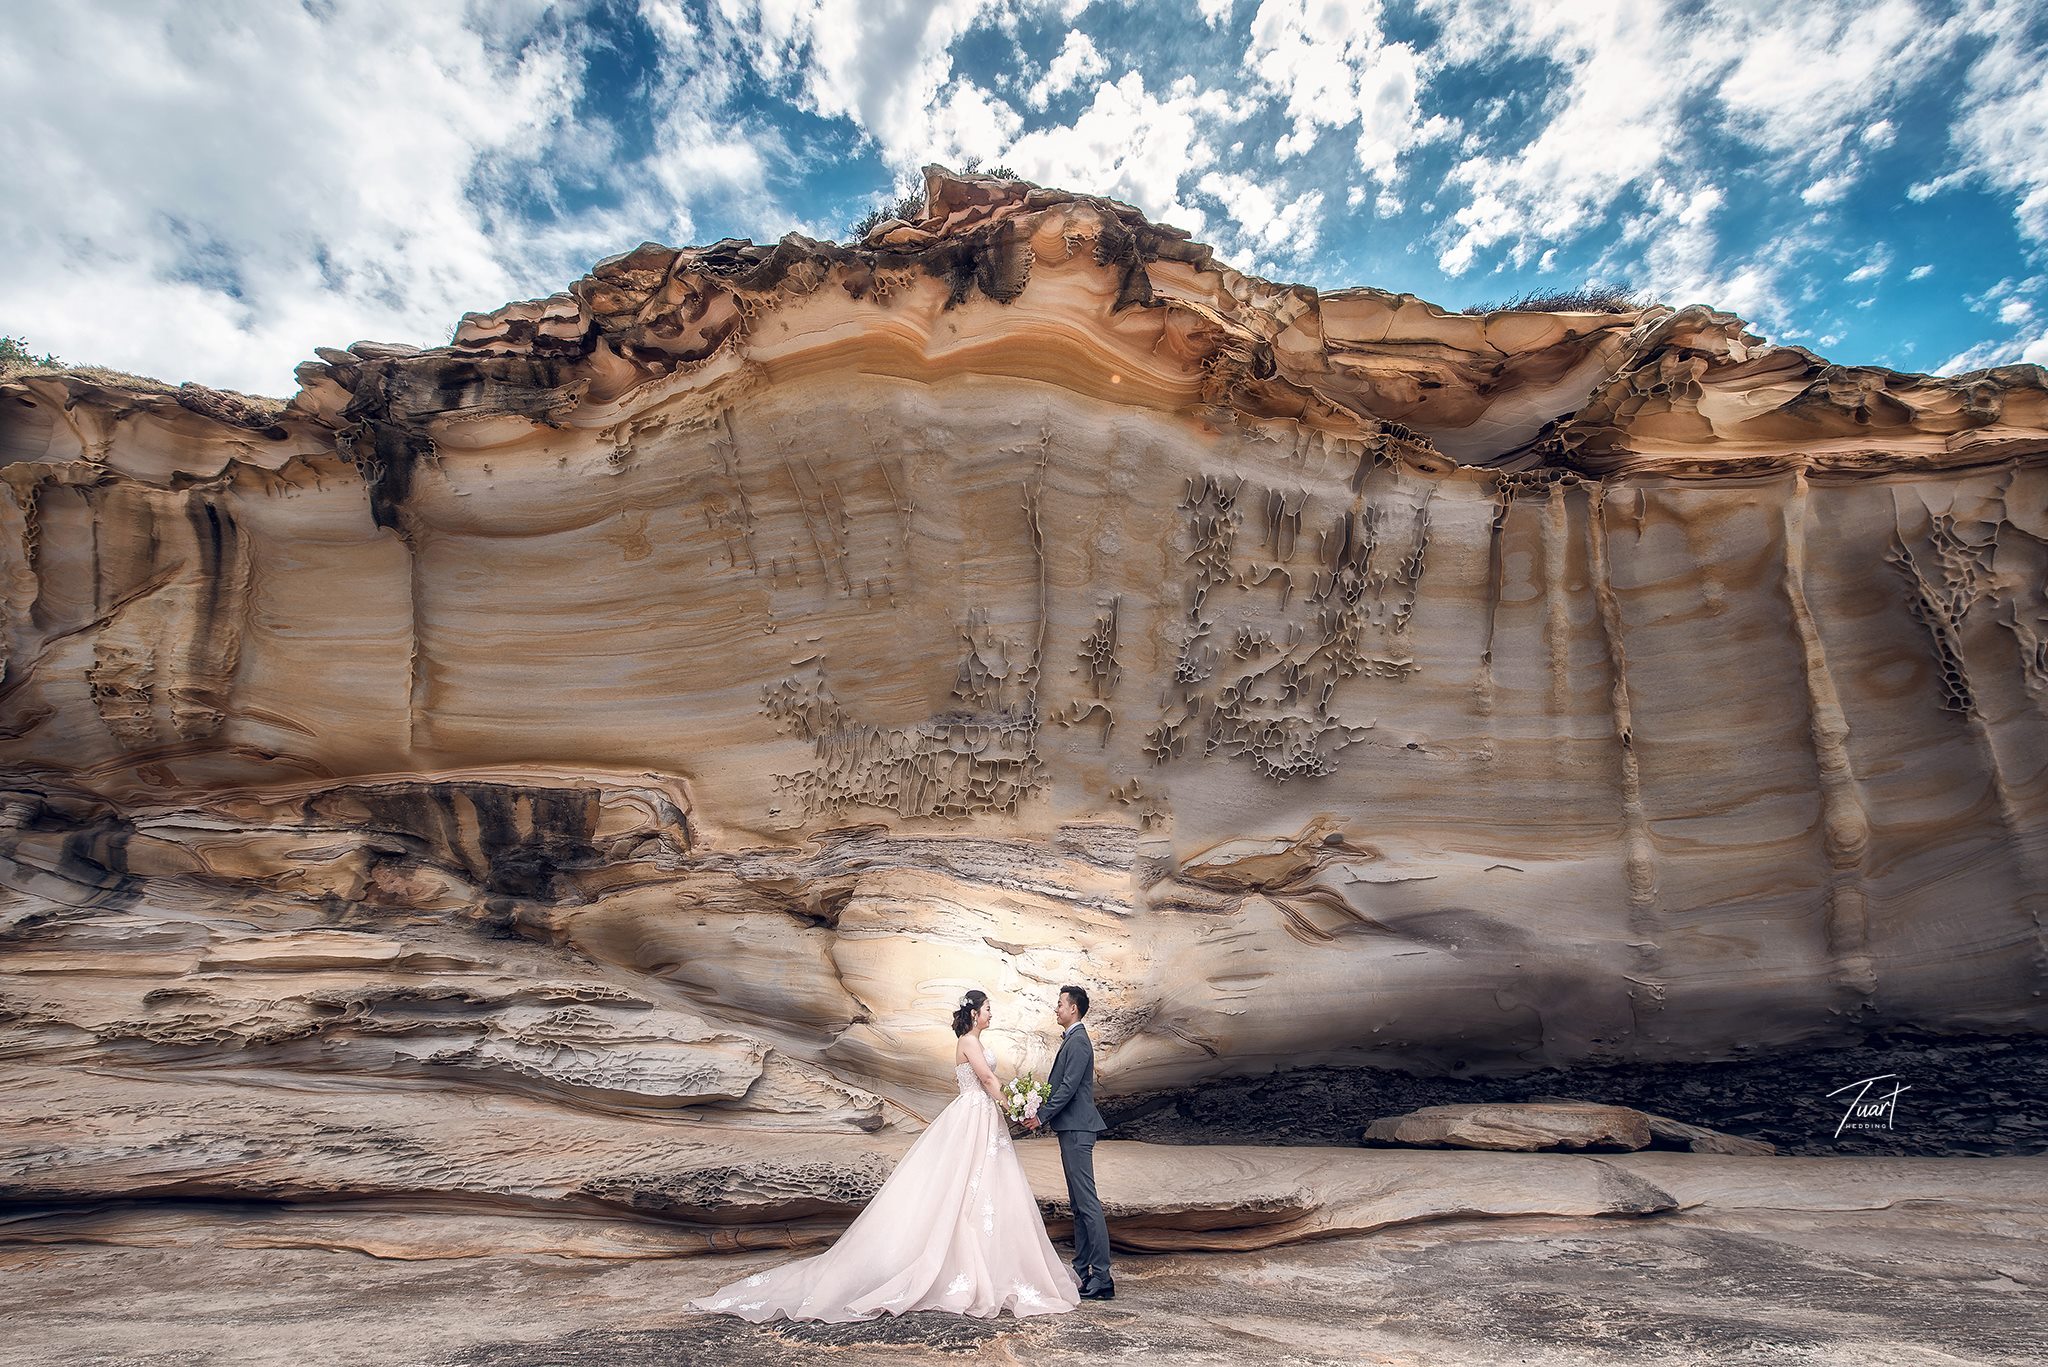 Album chụp ảnh cưới đẹp tại Australia: Jack-Rose 8